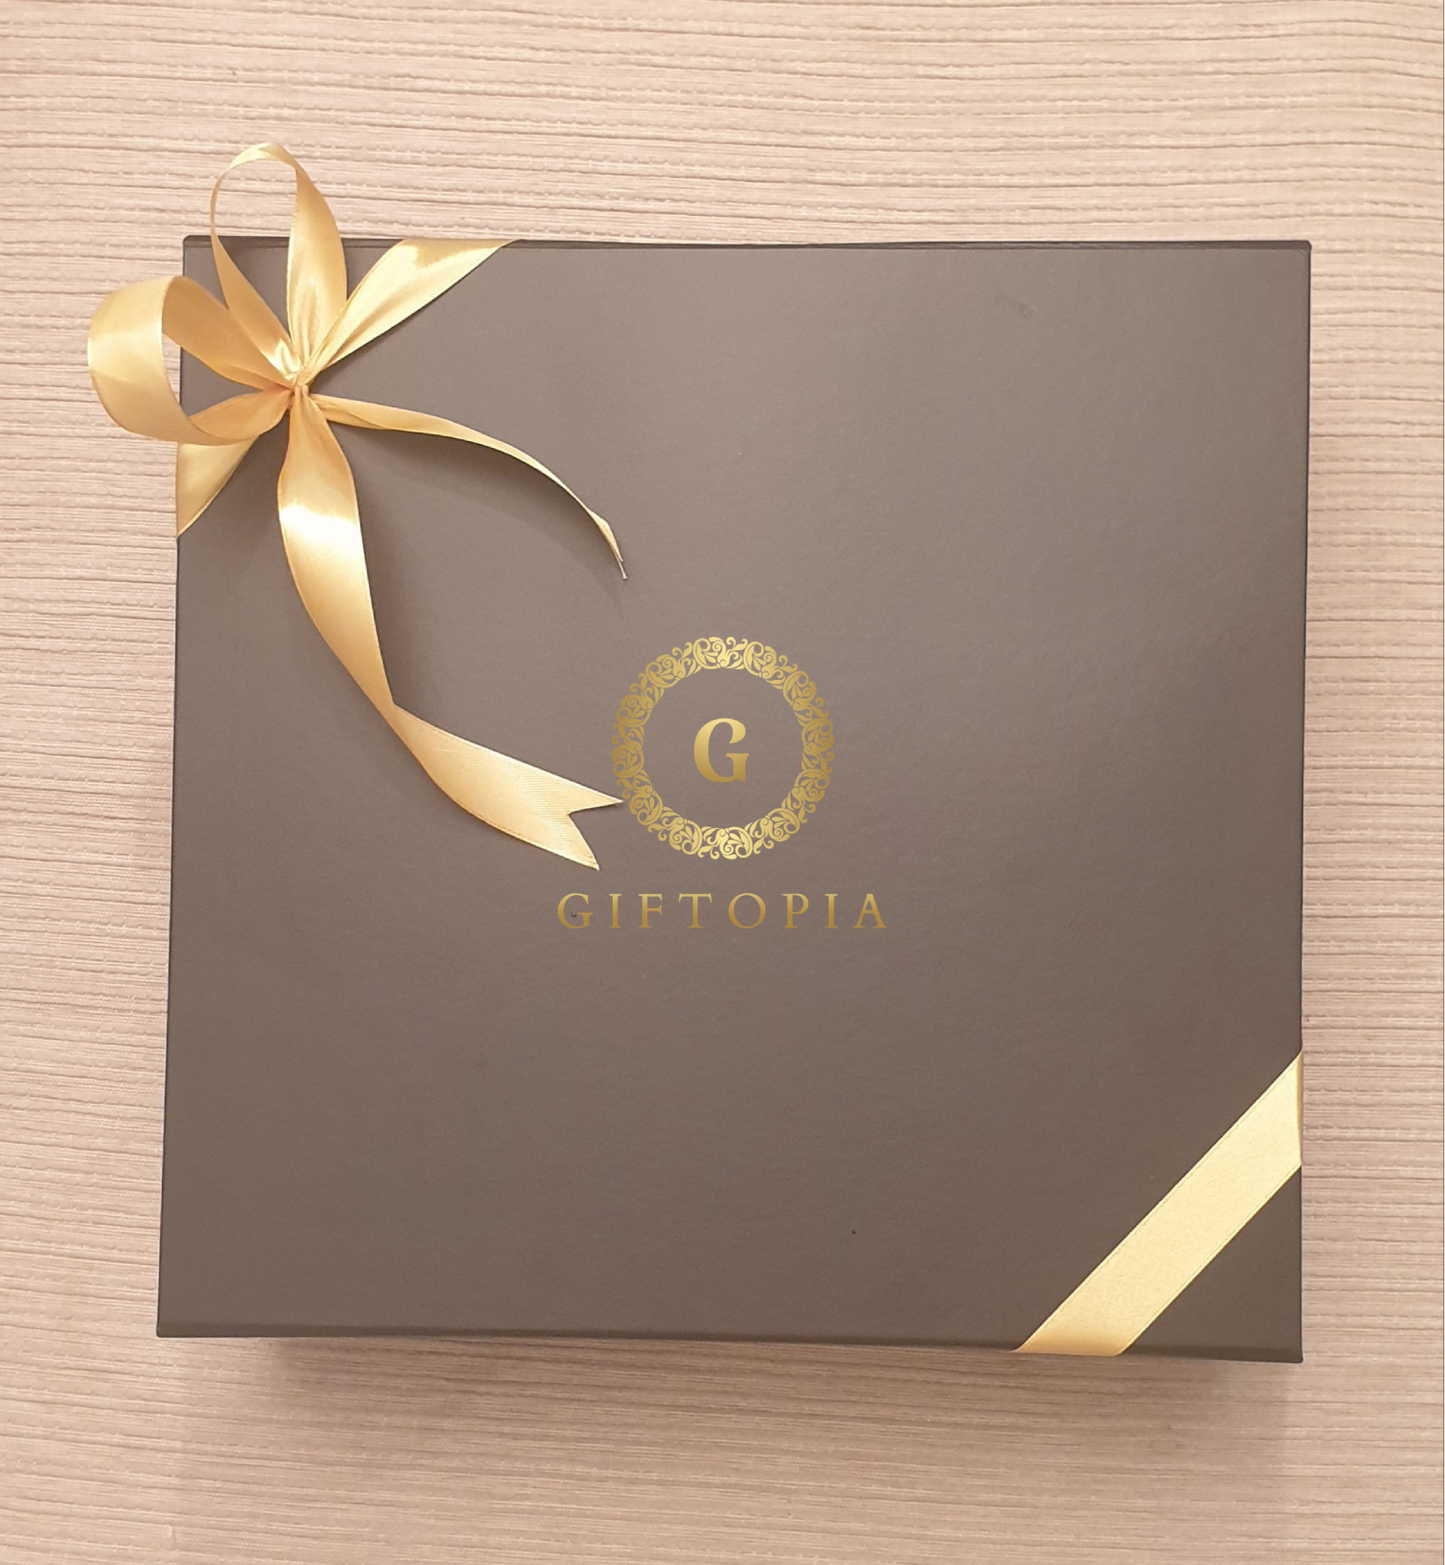 Chocoholic's Gold Gift Box